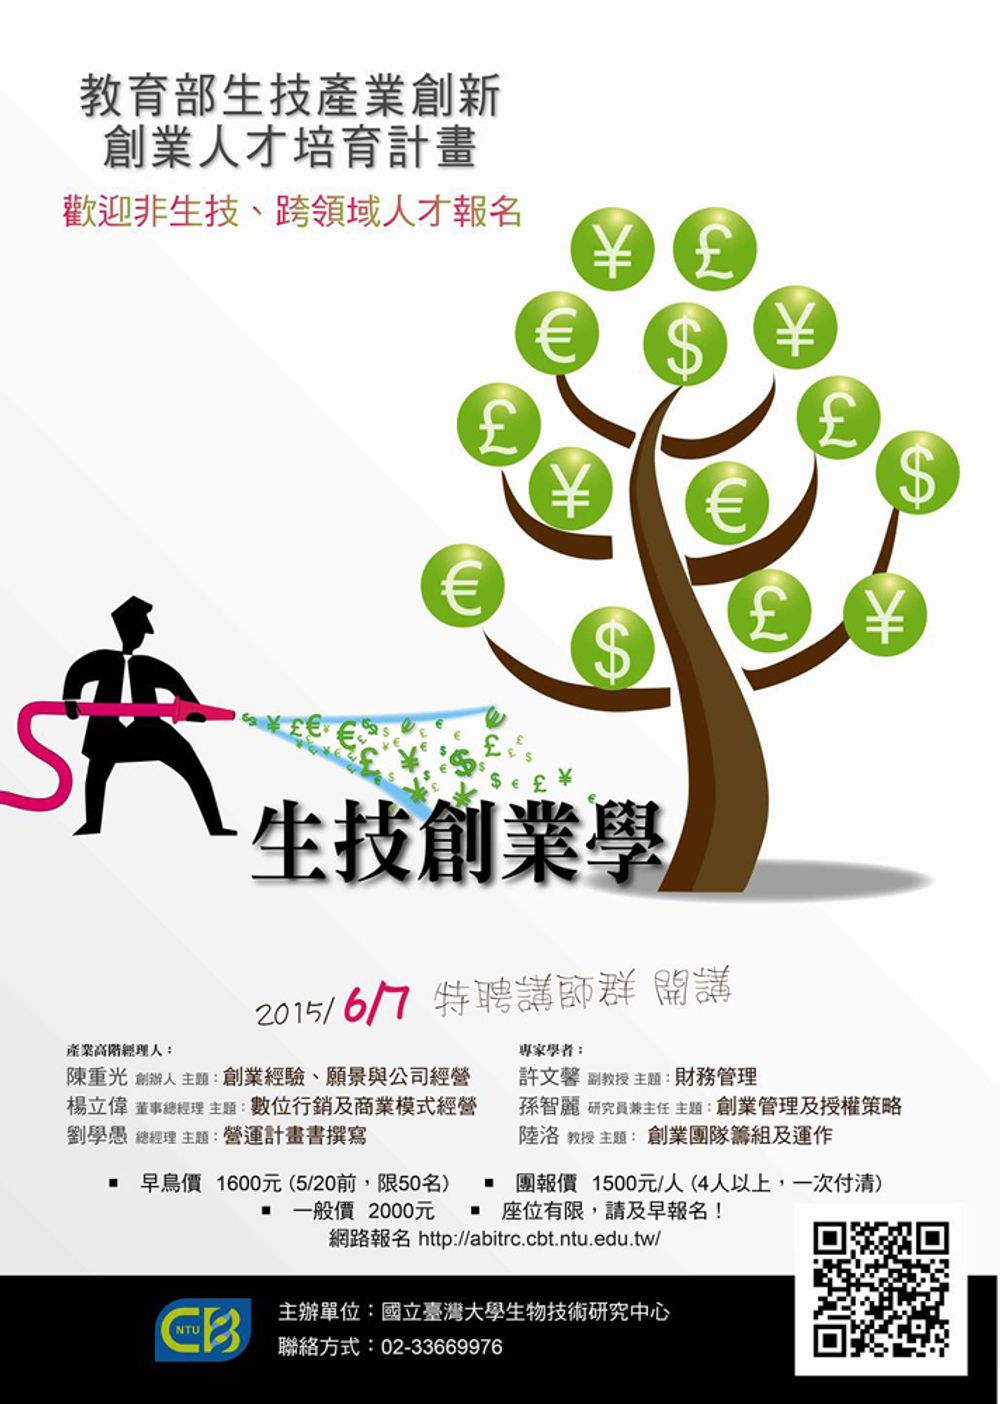 2015臺大生技創業系列課程海報。